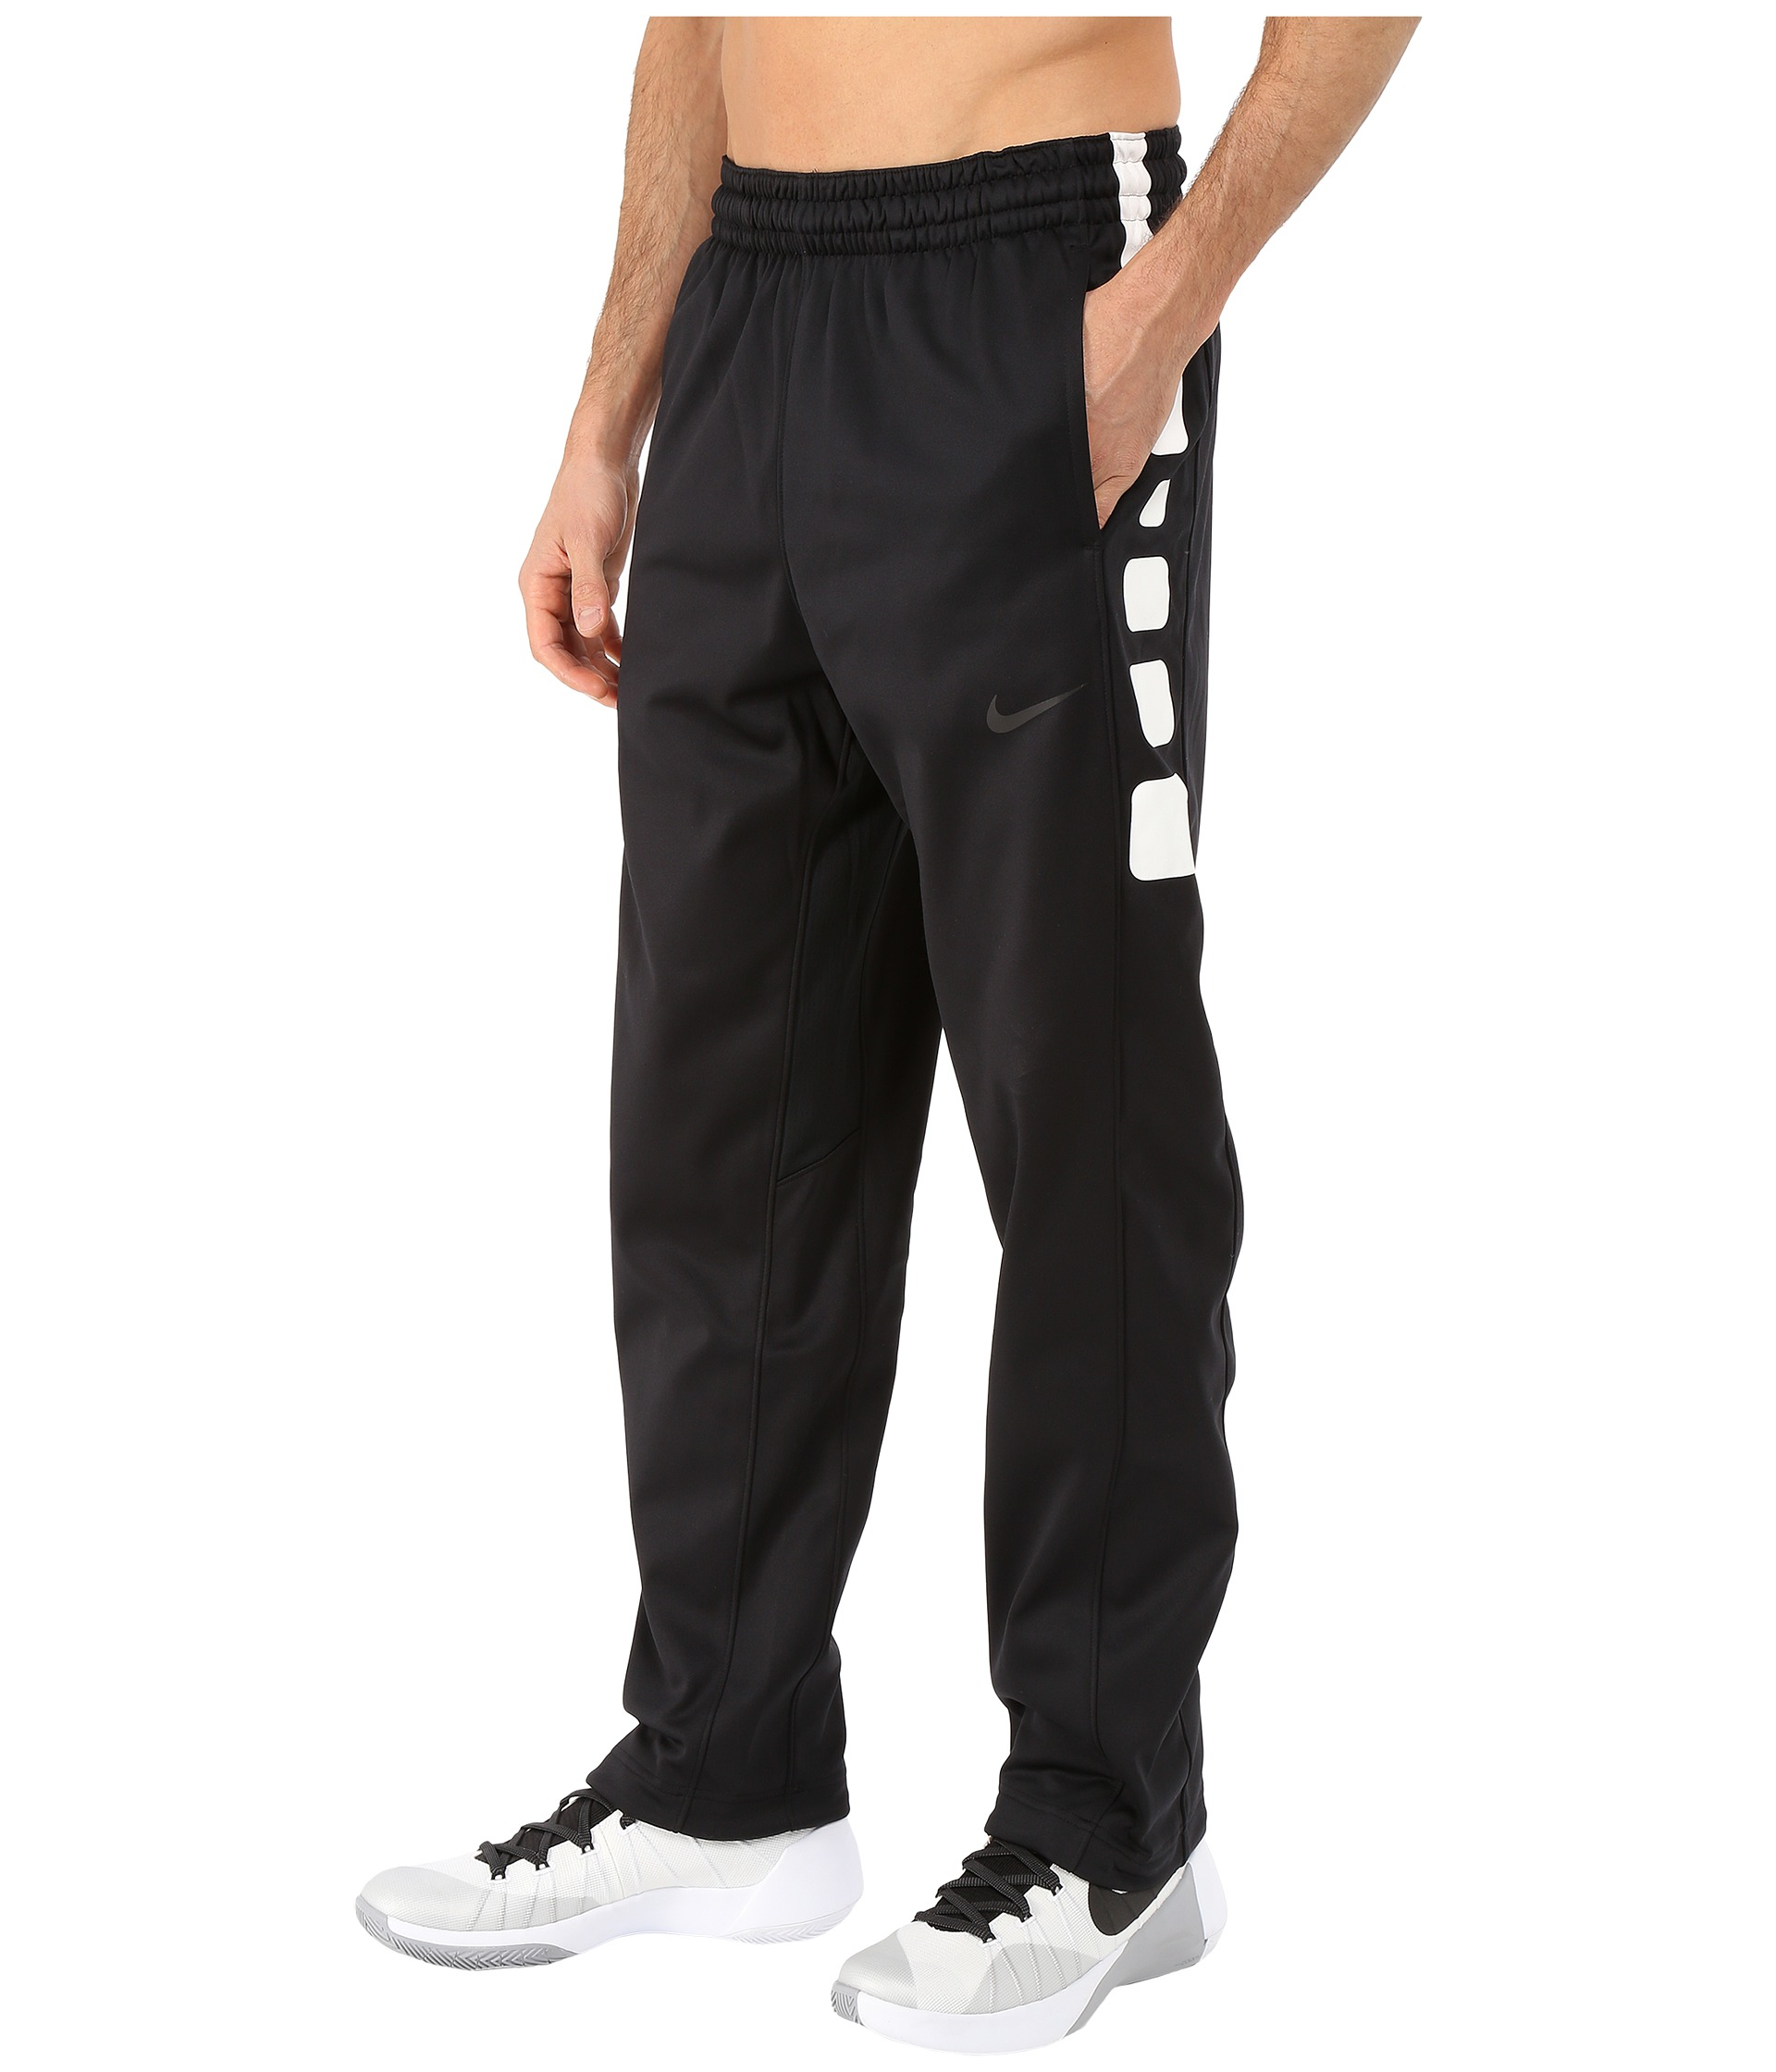 Nike Elite Stripe Pants in Black/Black 